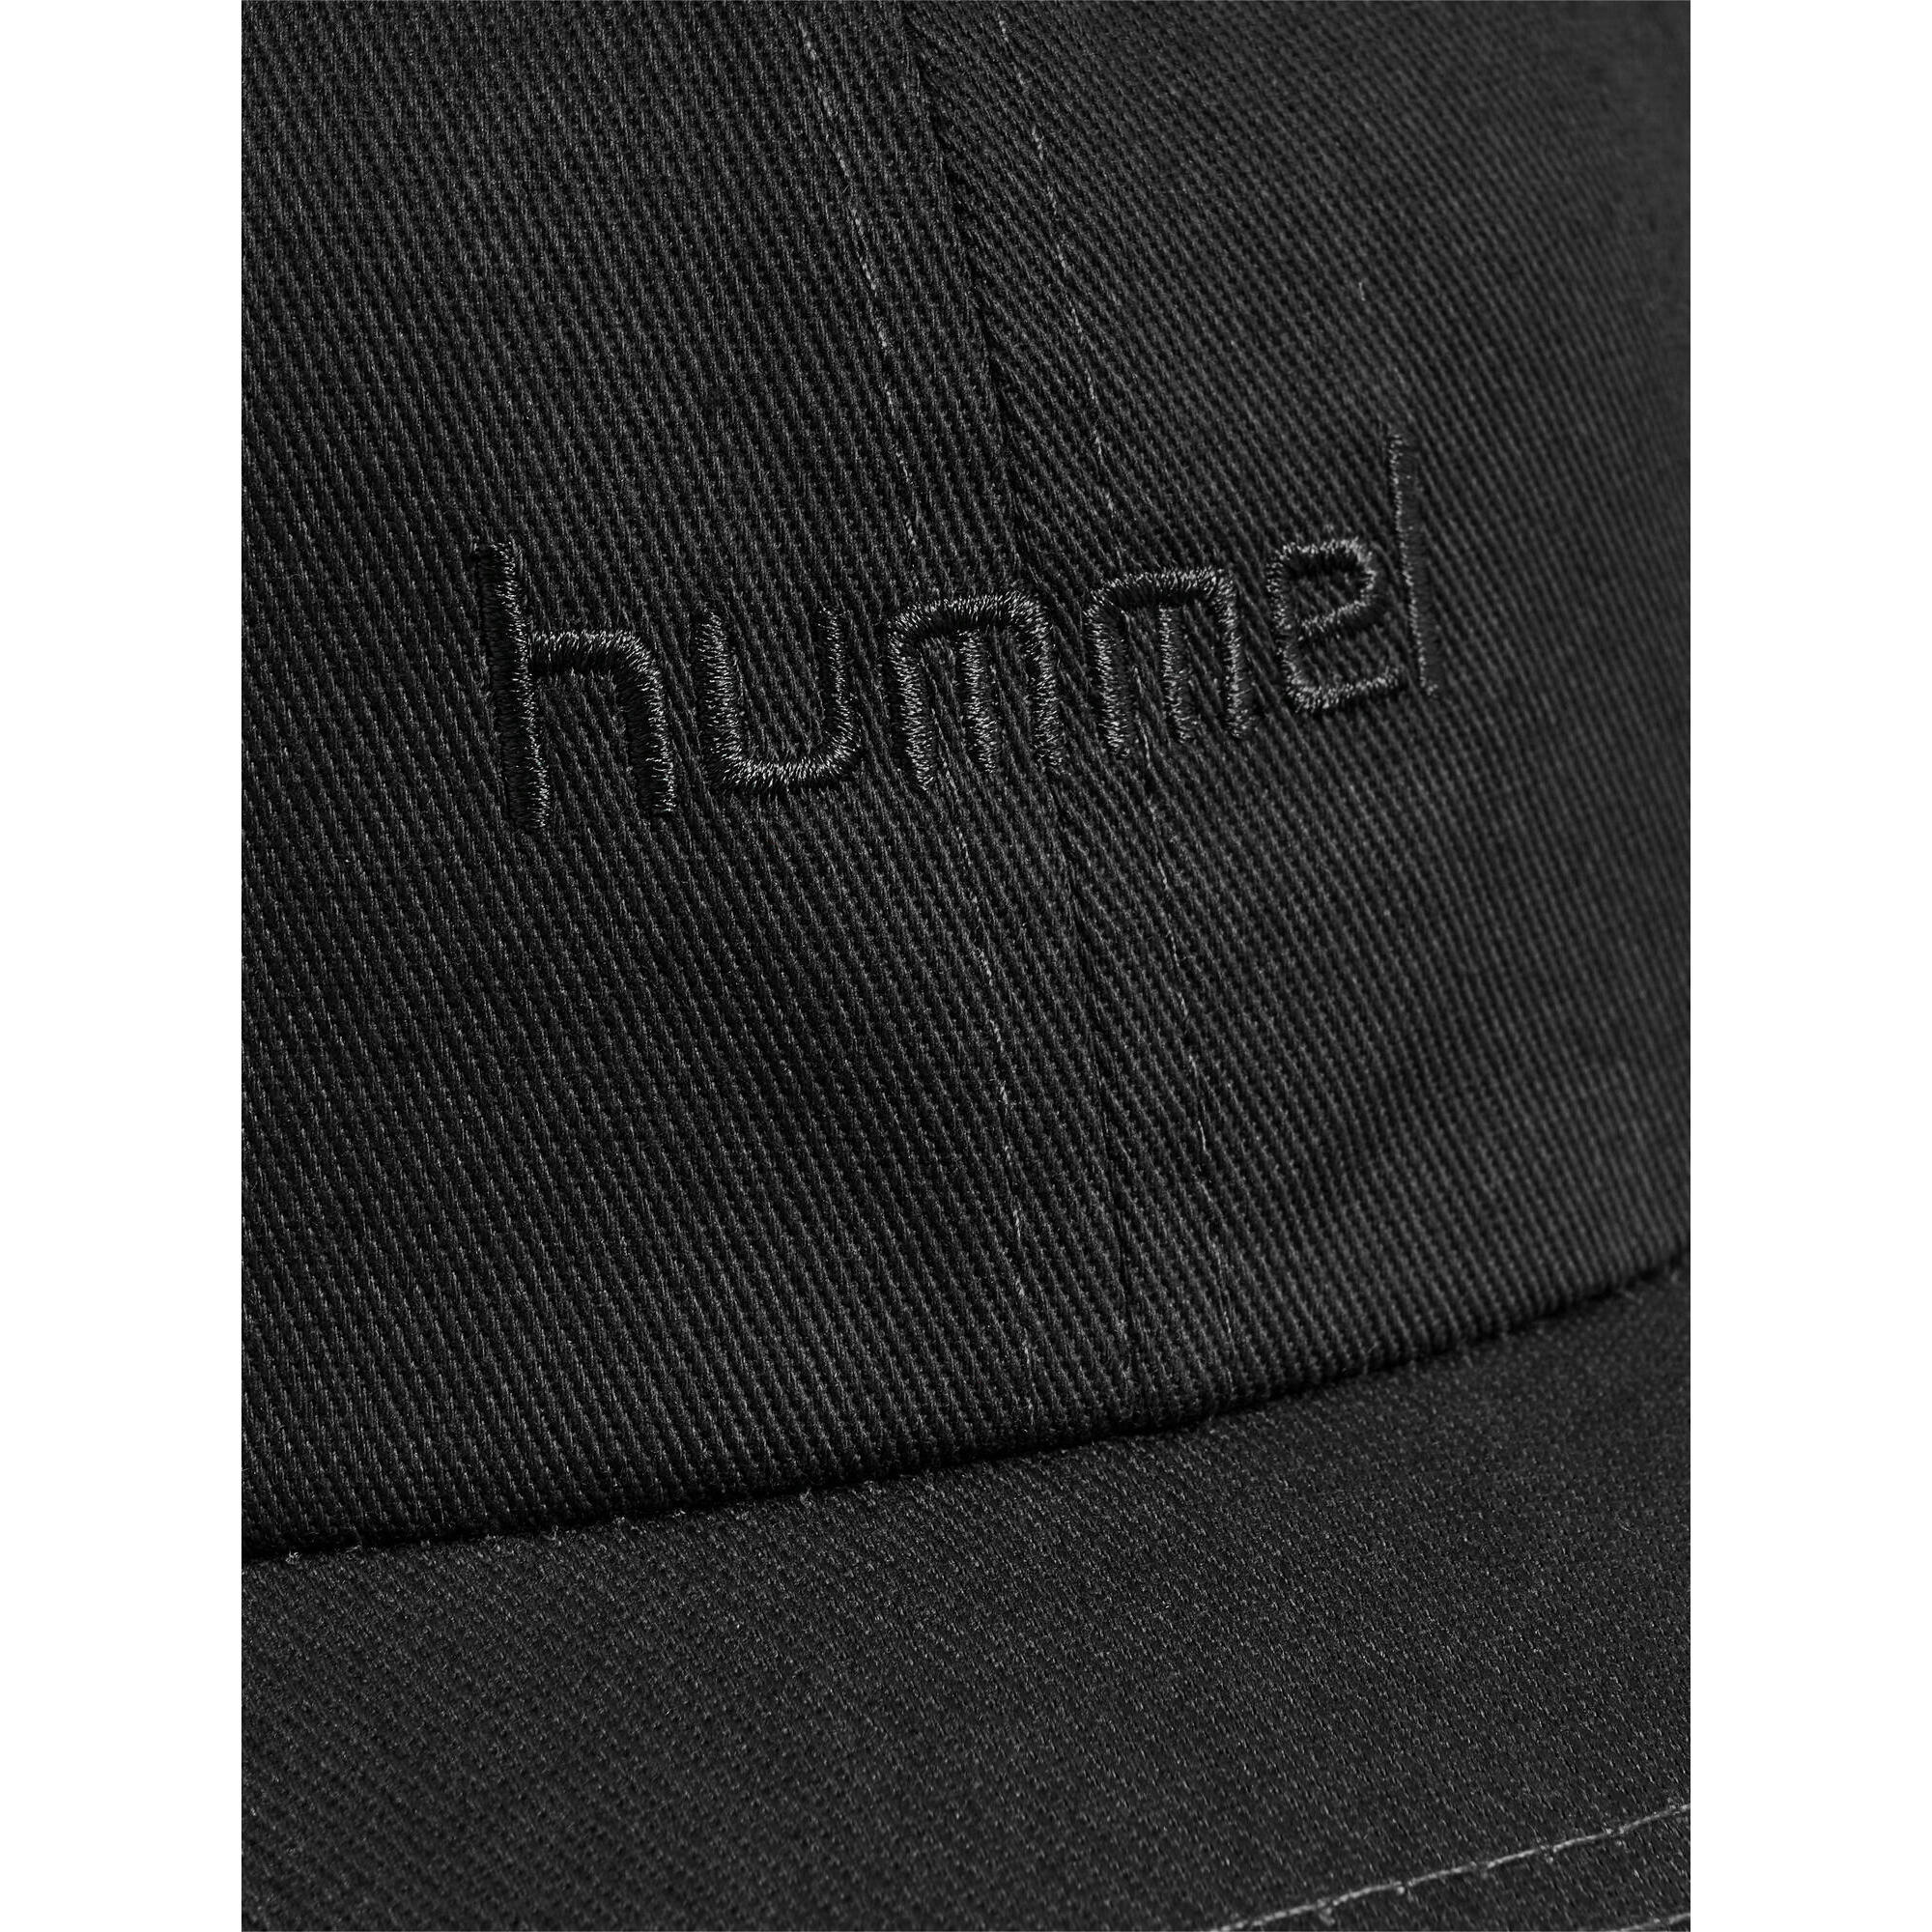 Кепка Hummel Hmlleo унисекс, черный